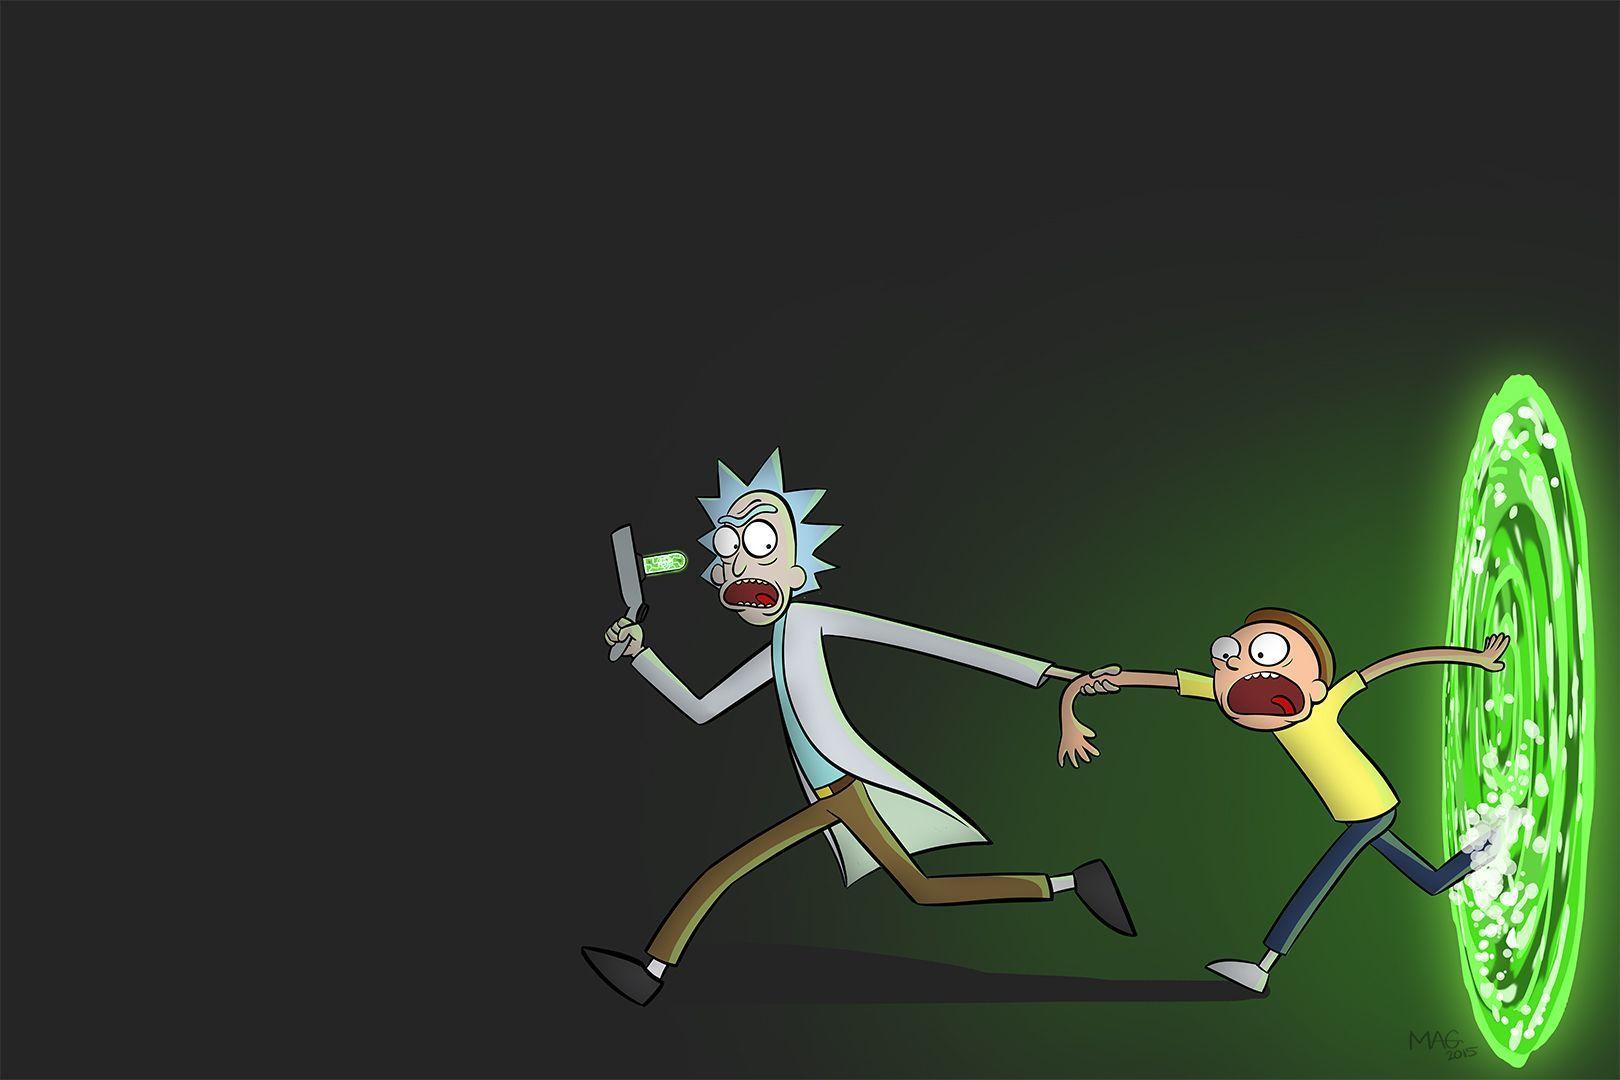 Bạn là fan của Rick and Morty? Cùng chiêm ngưỡng bức ảnh nền vô cùng độc đáo và hài hước với nhân vật của bộ phim thông qua \